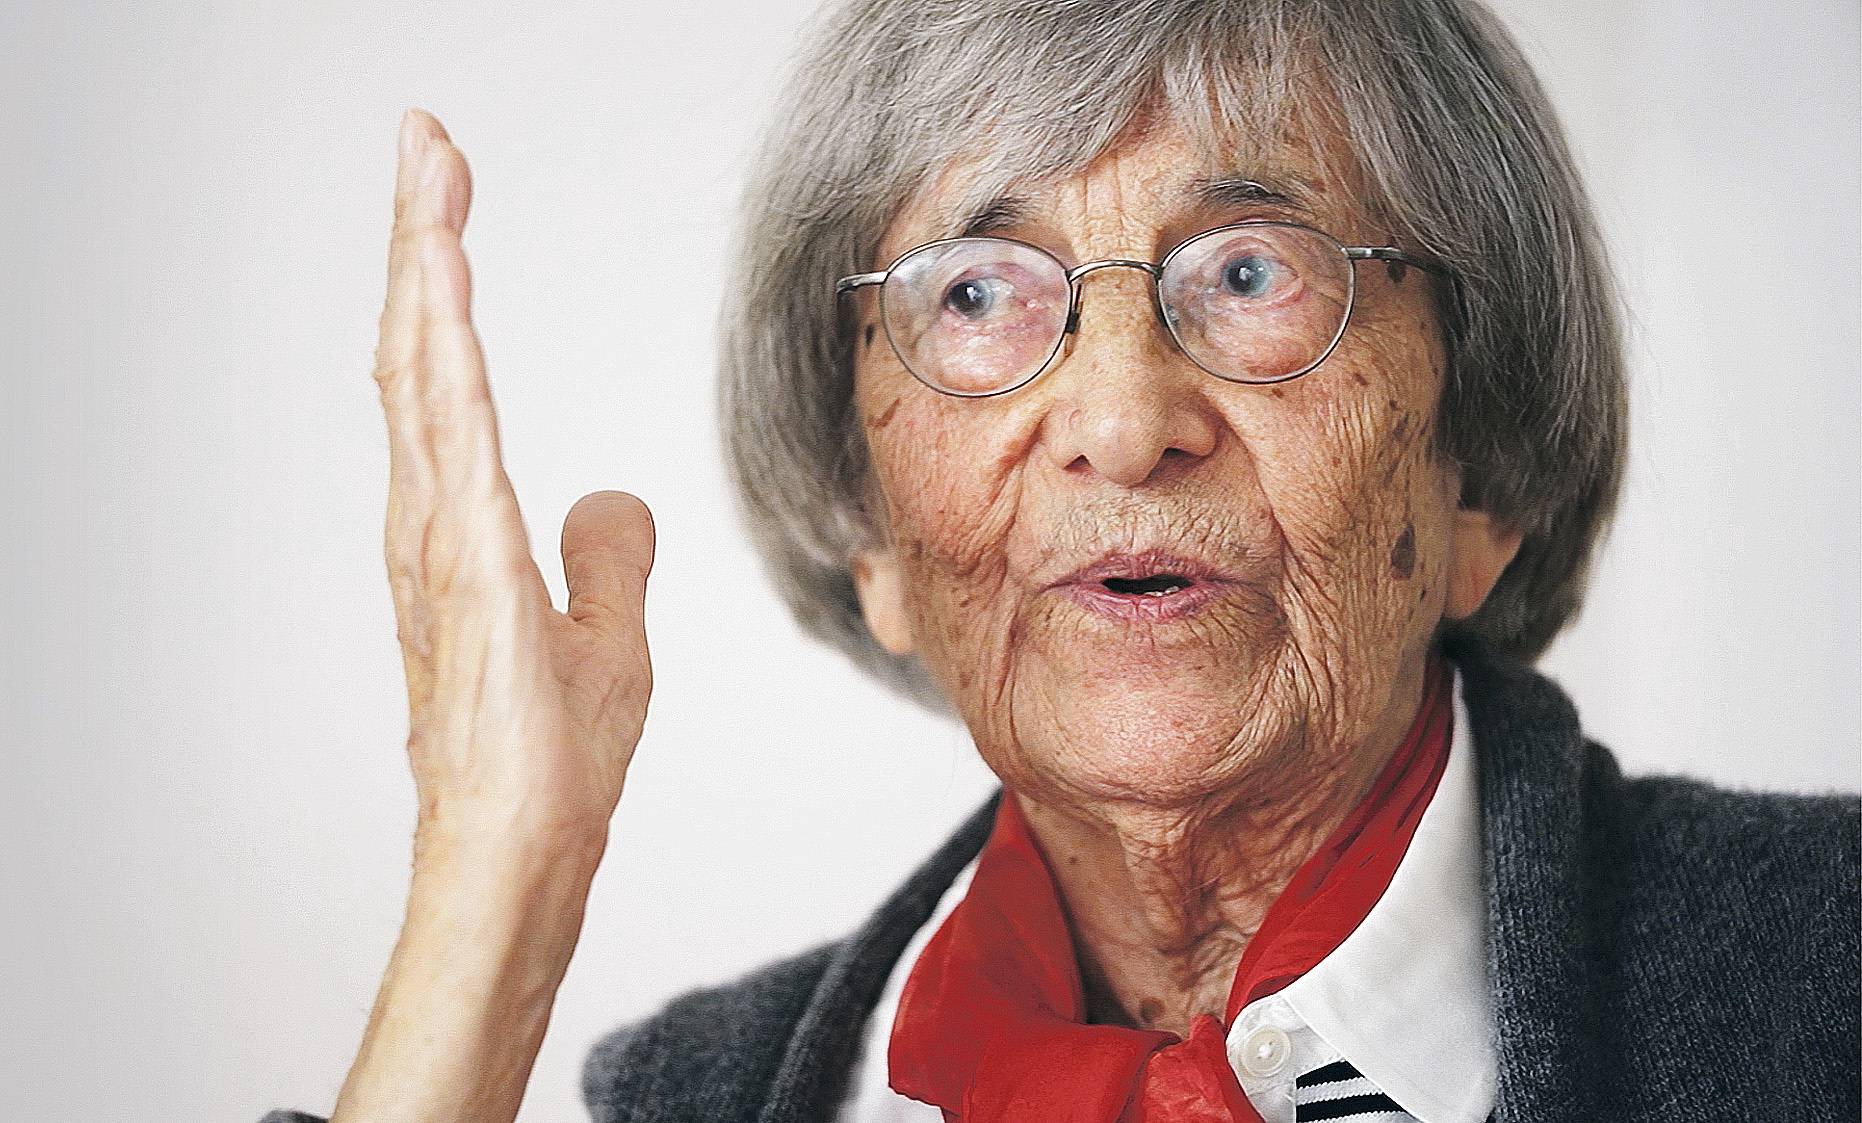 Die 95-jährige Luise Thiel ist ein